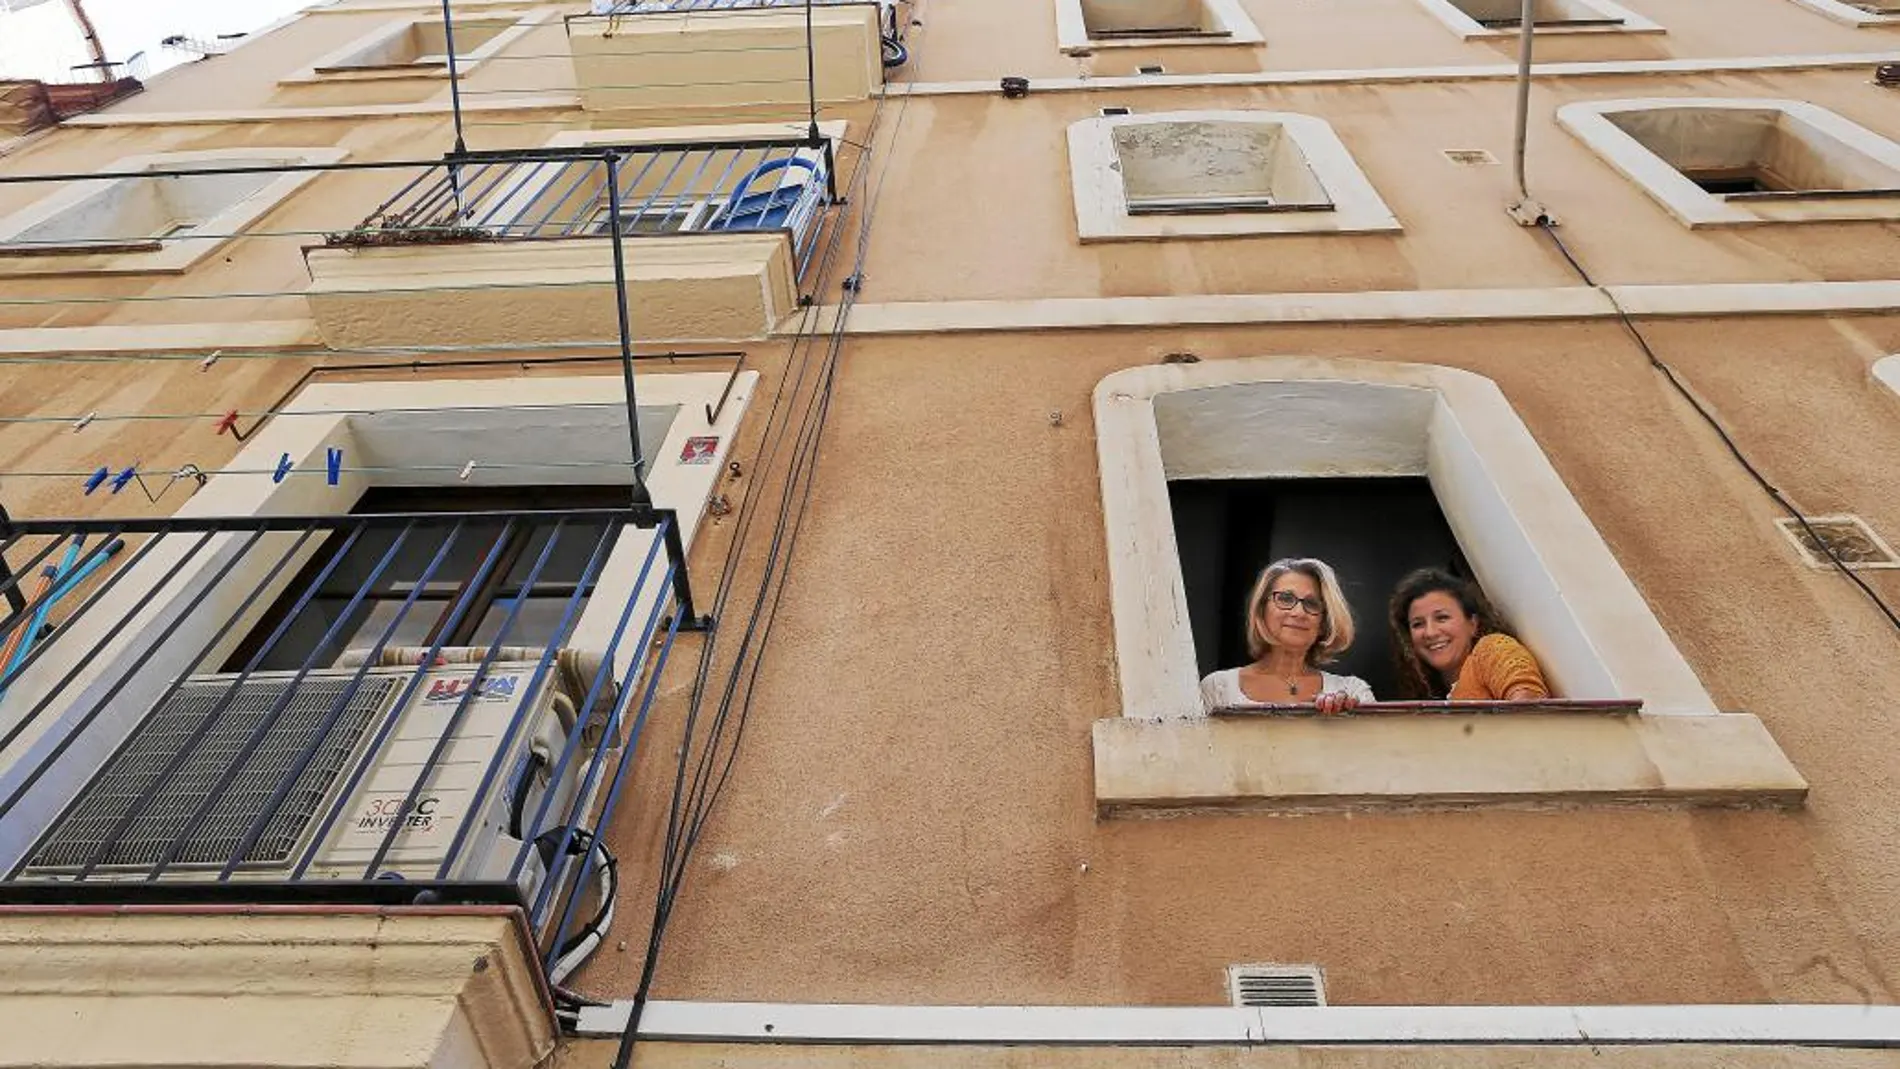 Montse Pérez y su hija Thaïs Franco en su piso de la Barceloneta antes de tener que dejarlo para los siguientes usuarios de Airbnb que habían alquilado el apartamento a su inquilino